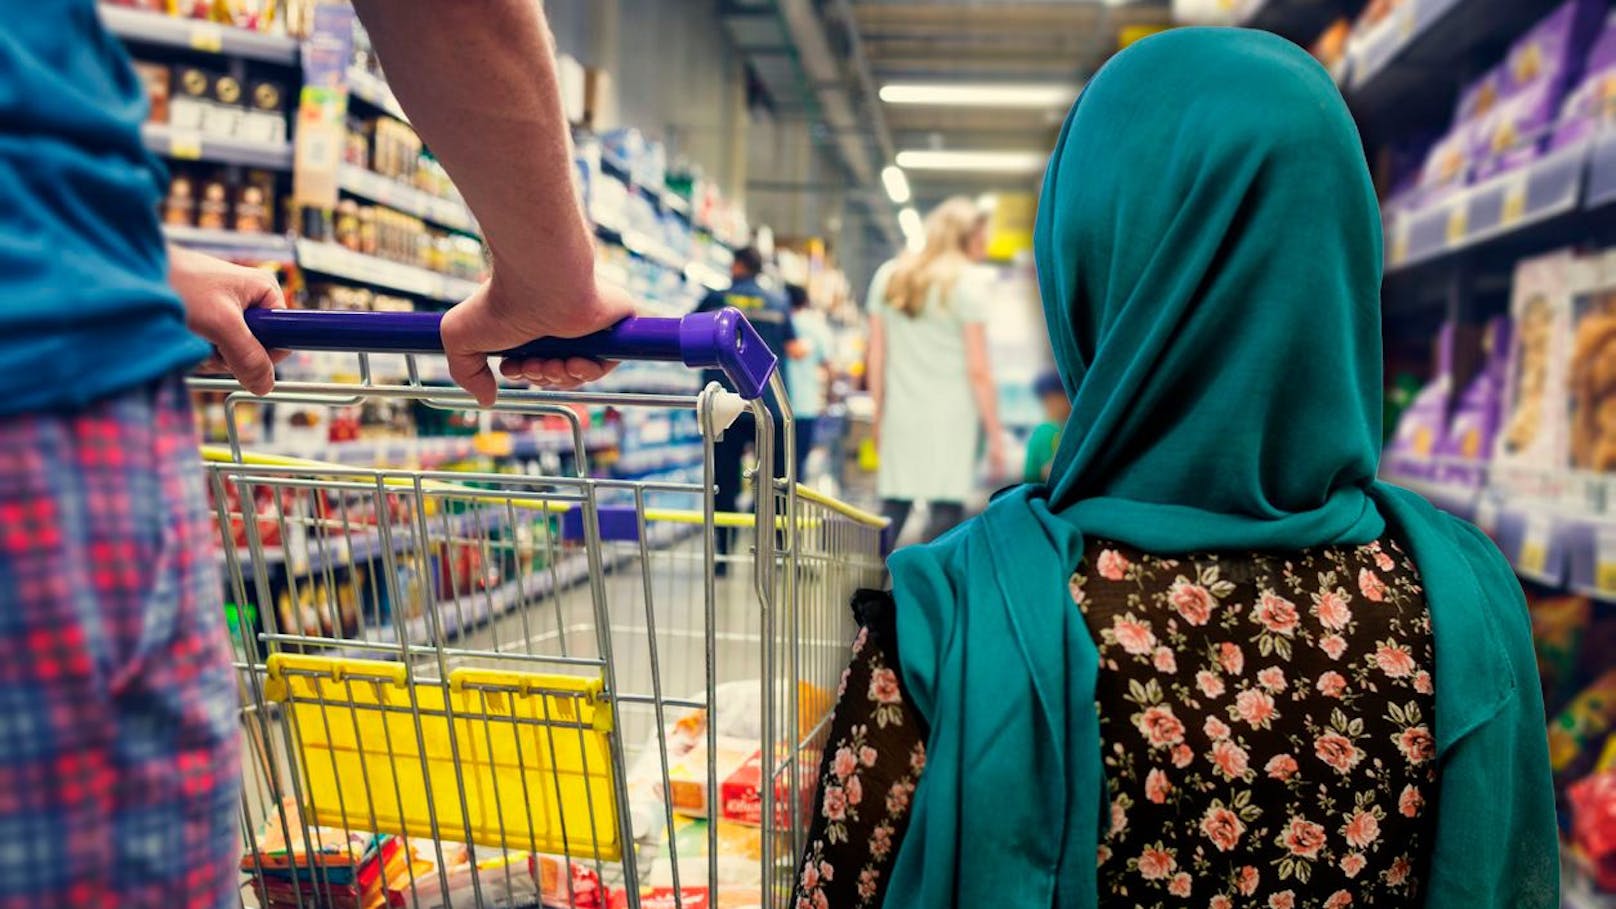 Kopftuch unerwünscht – Rassismus-Eklat in Supermarkt